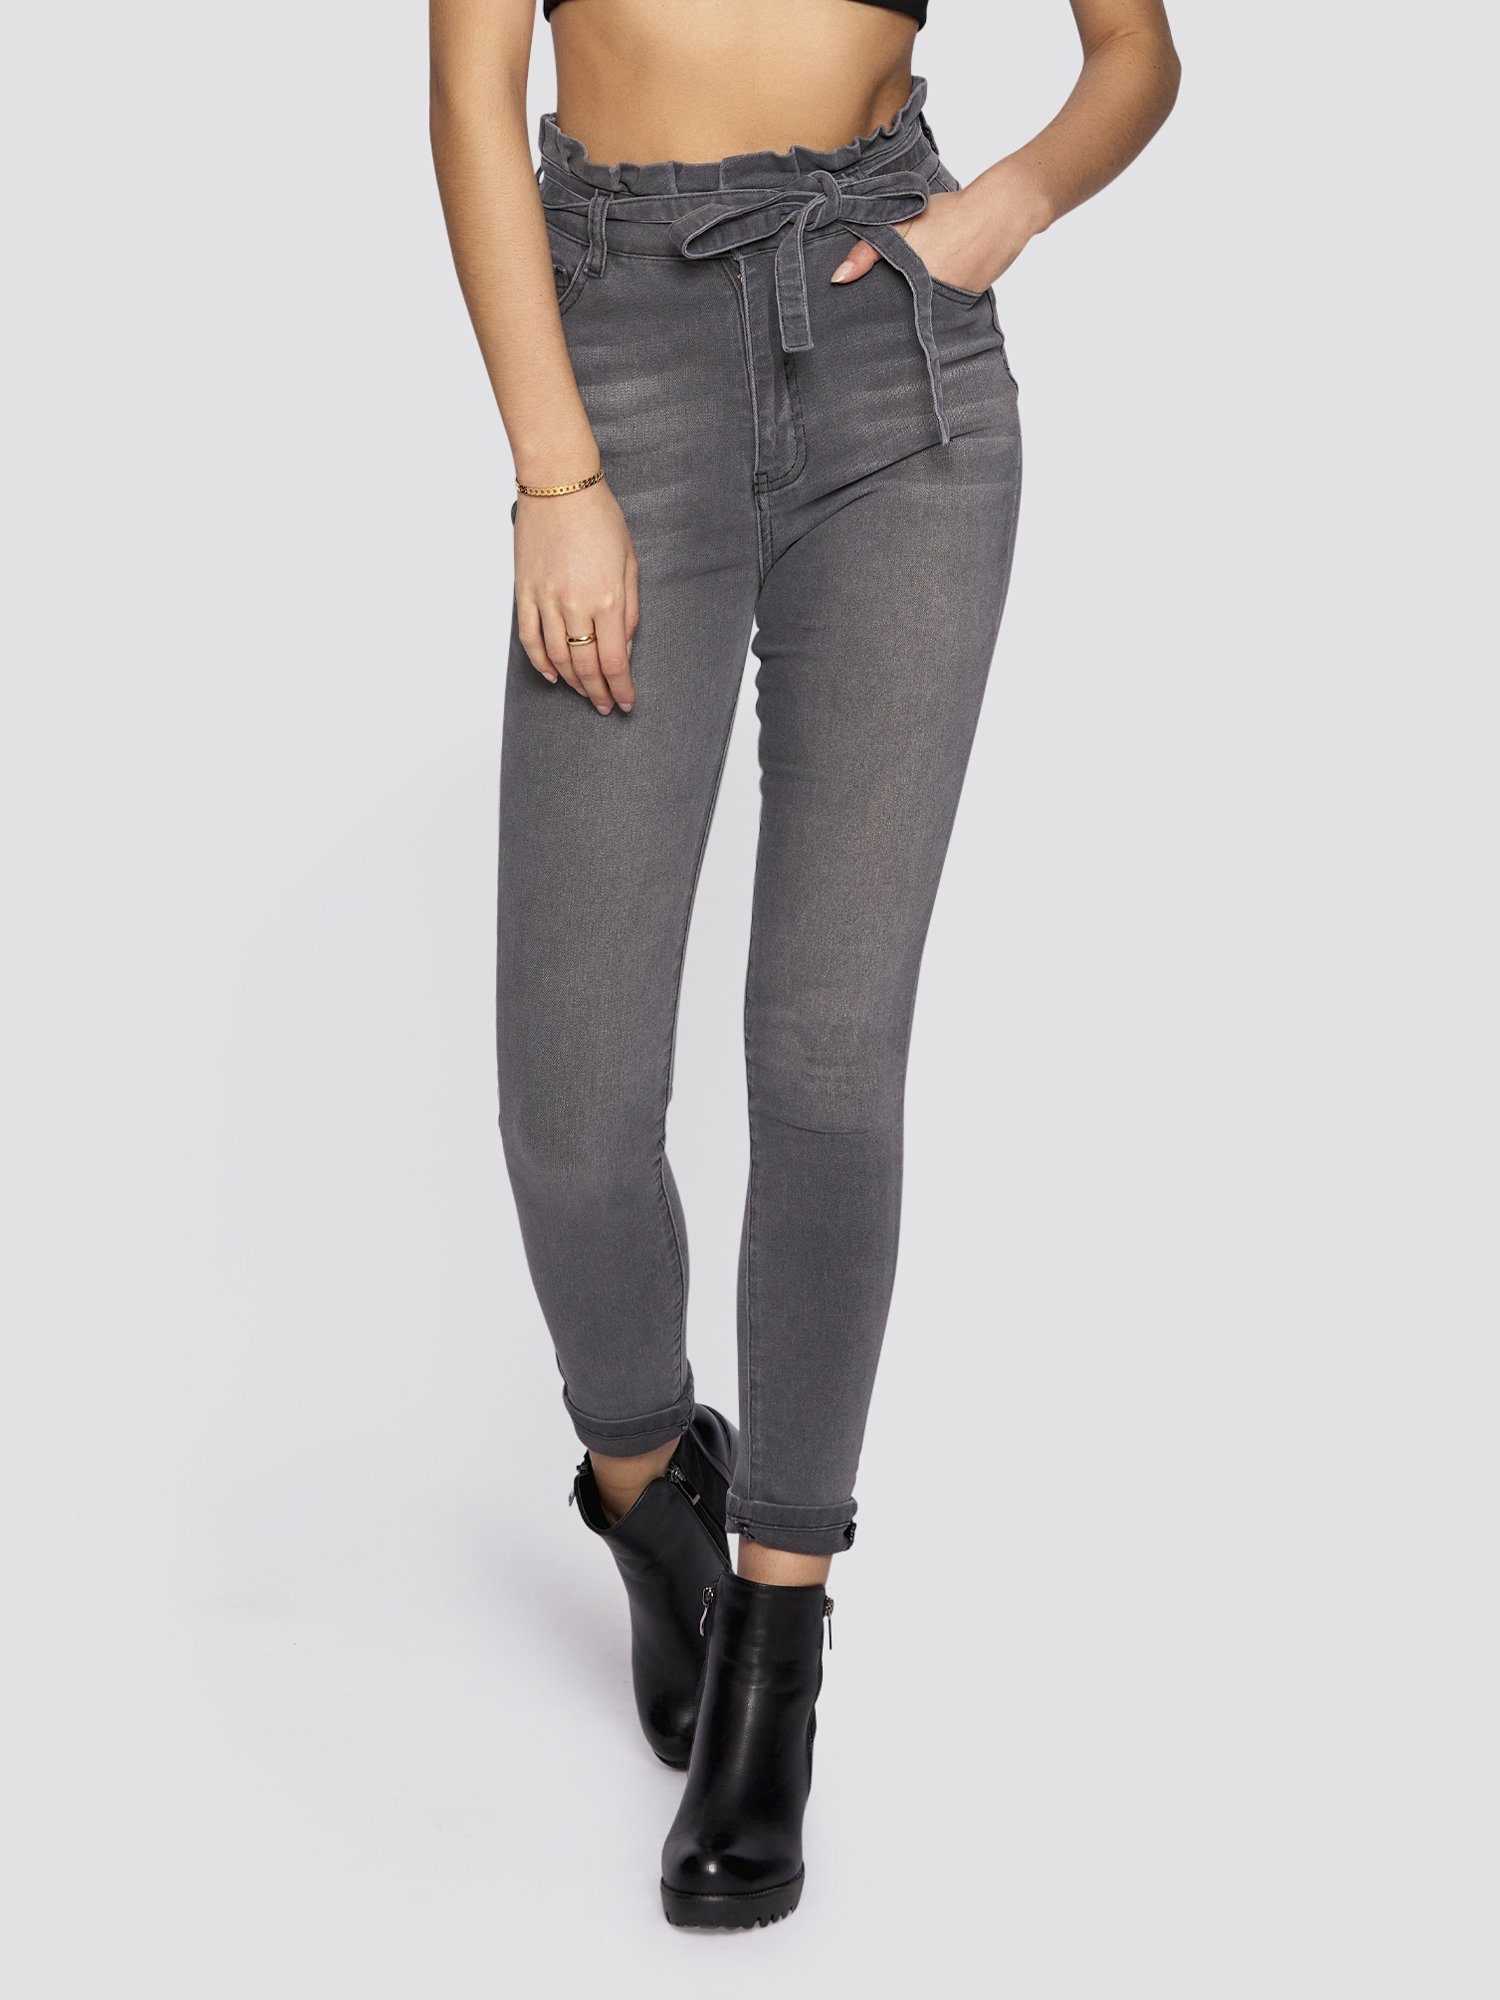 Freshlions High-waist-Jeans Jeans Bindegurt mit grau